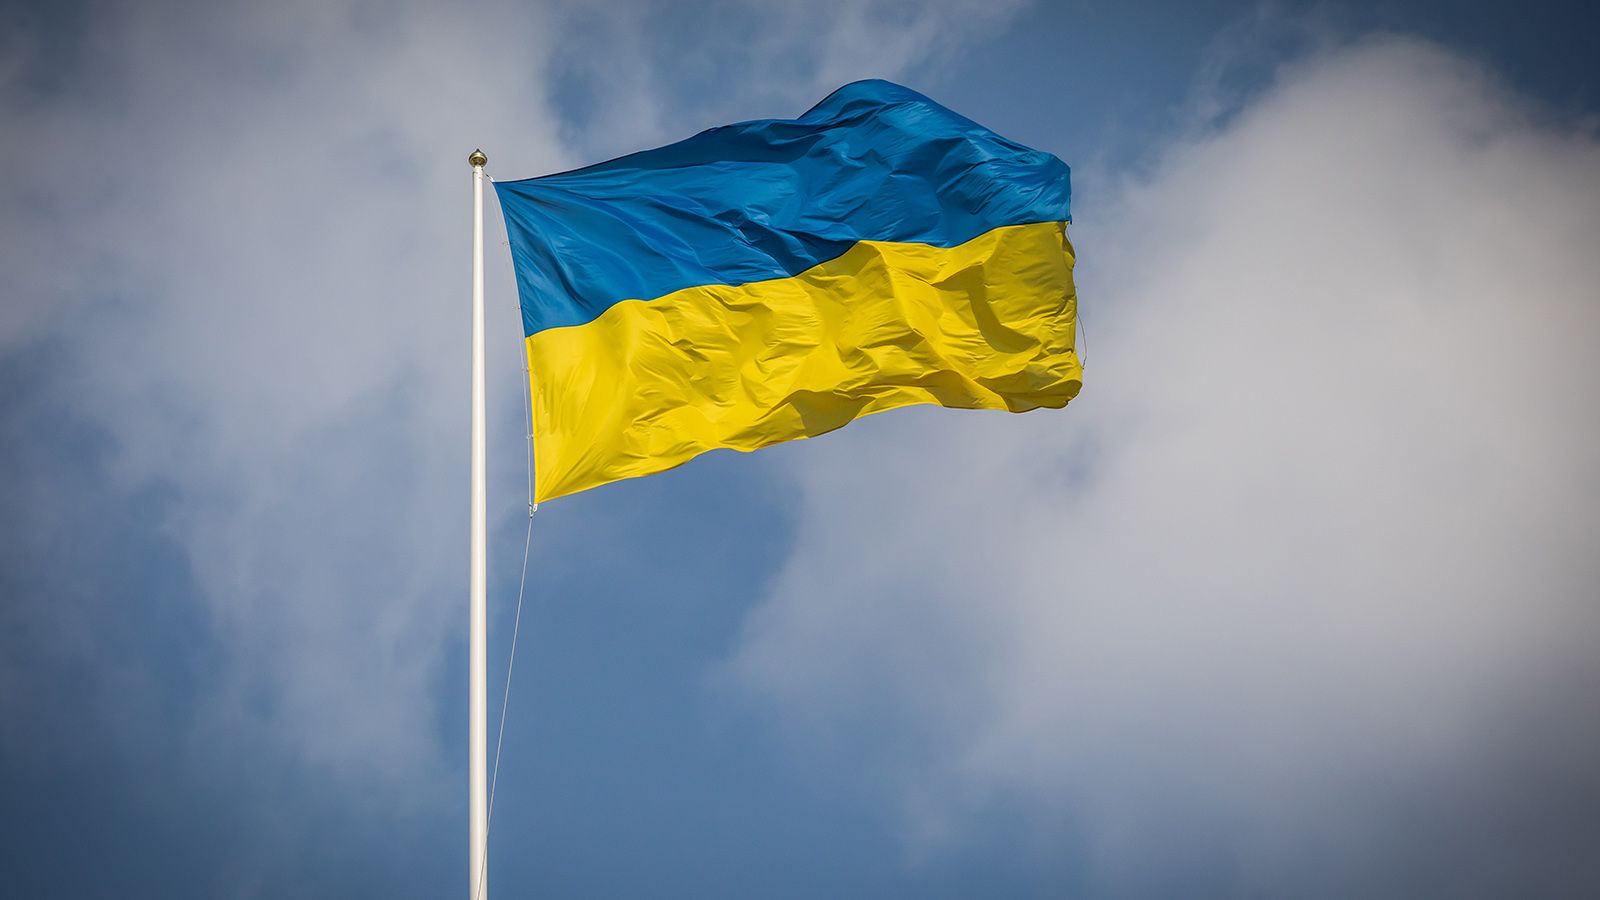 Адвокат Рыбин: Киев использует политзаключенных для давления на Москву